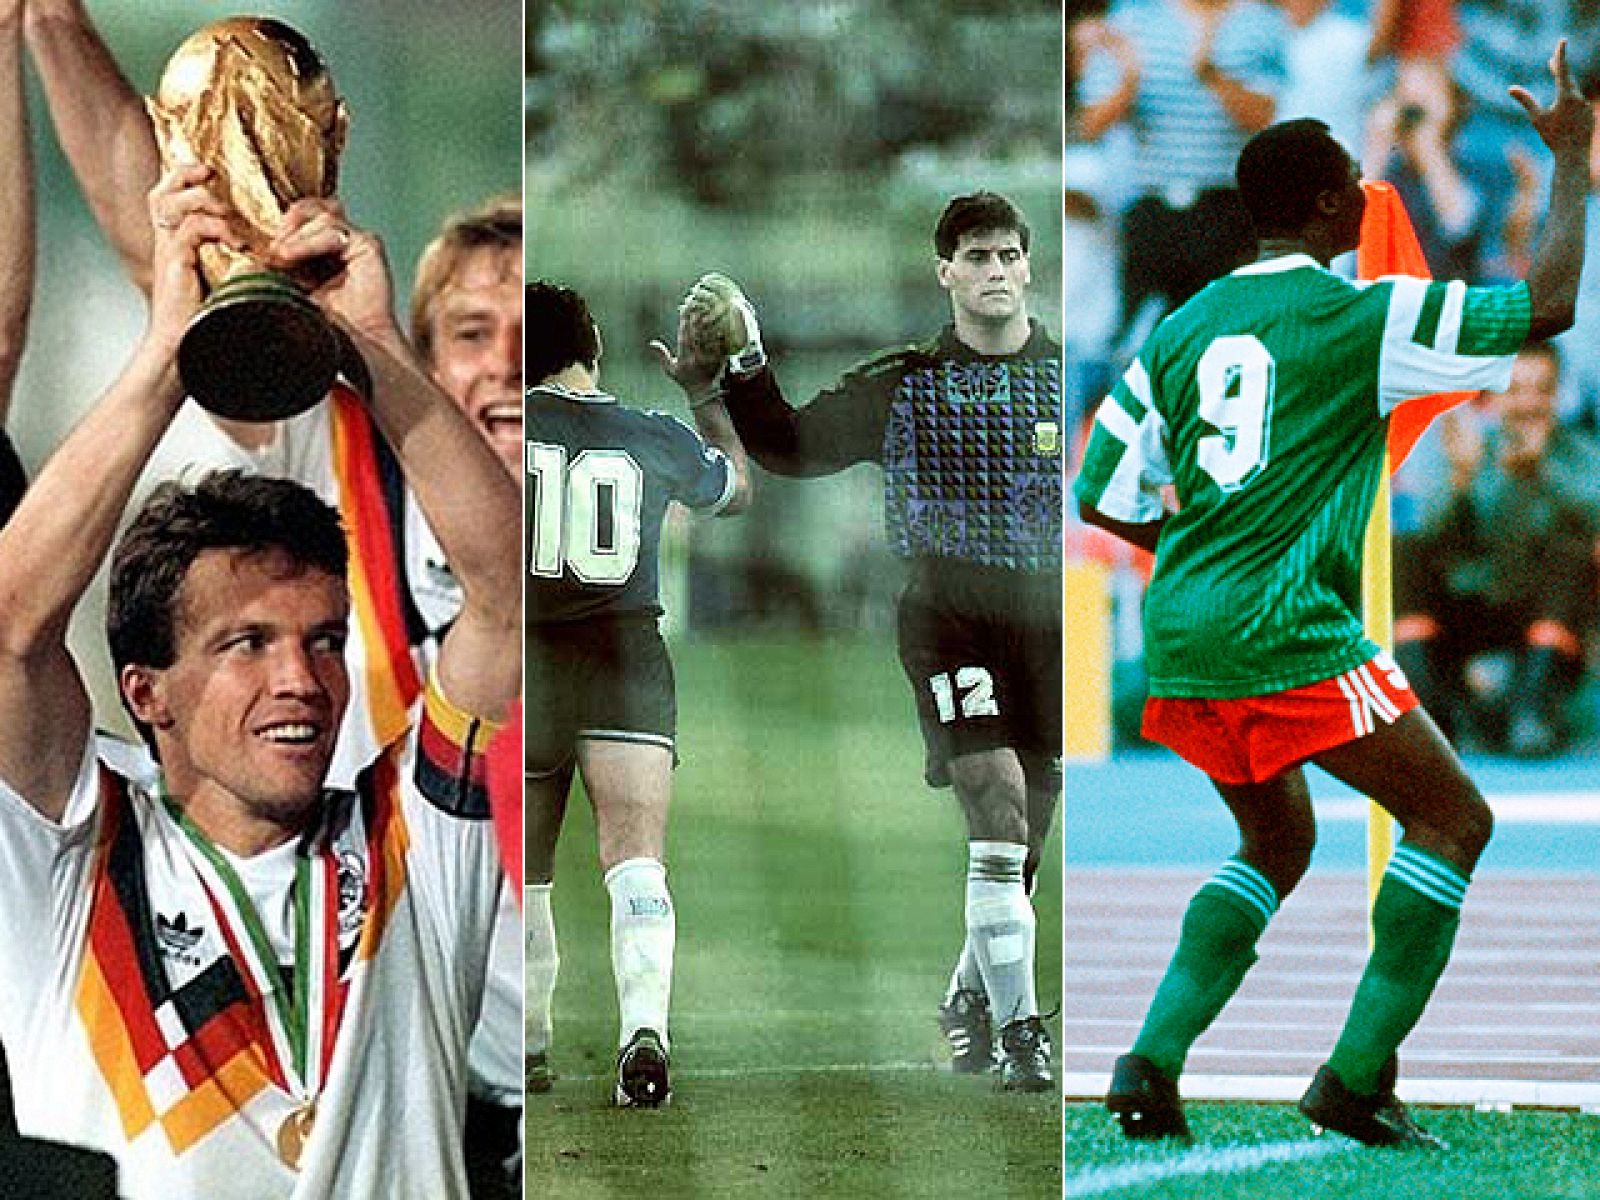 El Mundial de Italia 90 dejó para el recuerdo imágenes inolvidables: el baile de Roger Milla, los insultos de Maradona, Beckenbauer ganando también como entrenador, Míchel para lo bueno y para lo malo, etc.